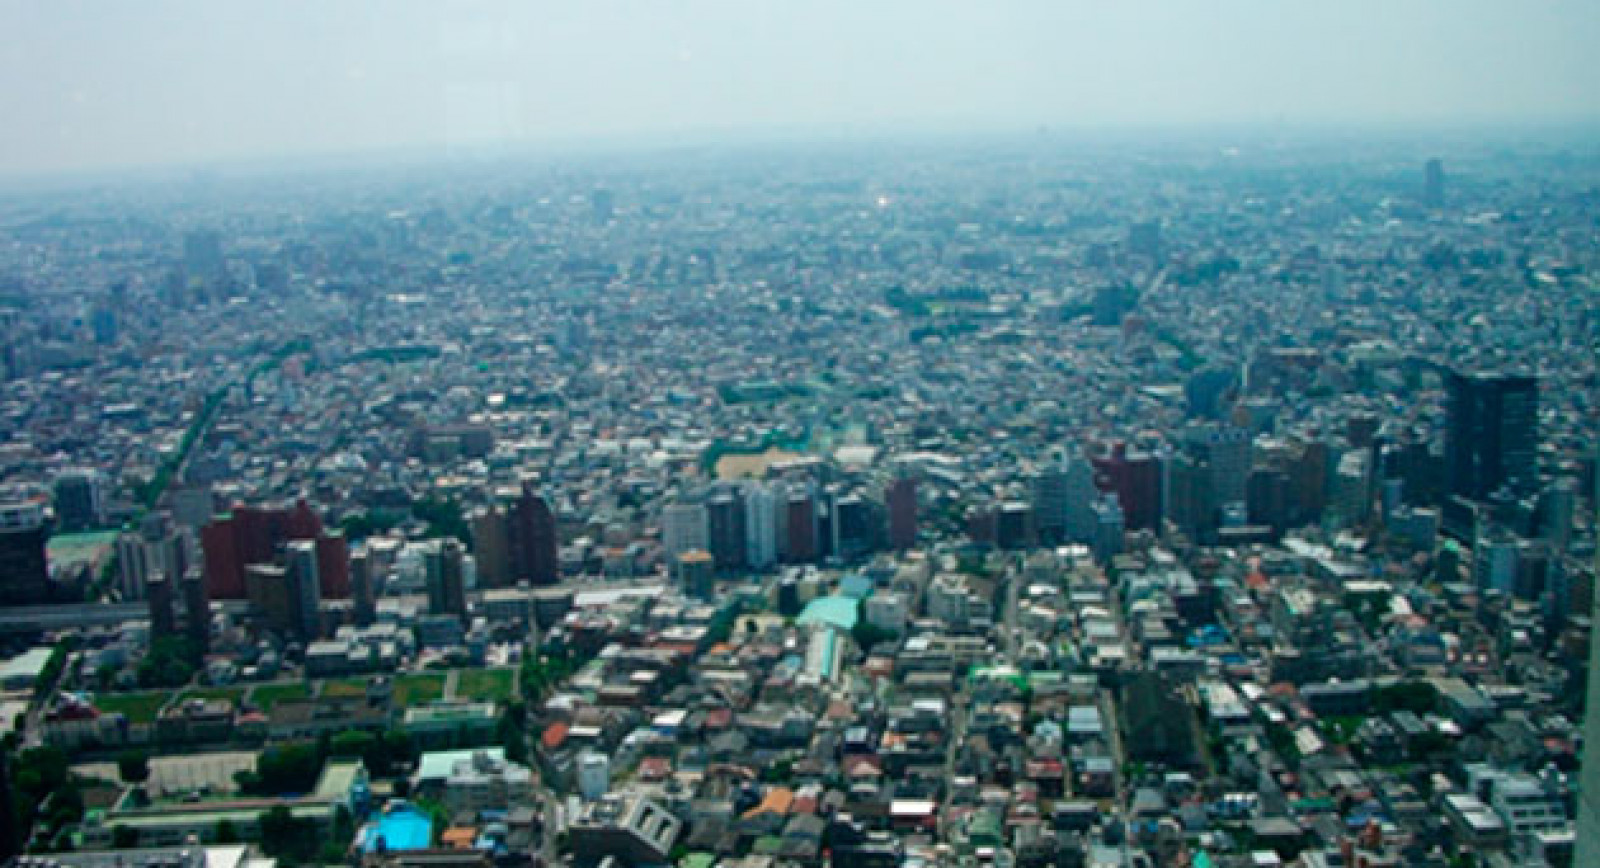 Mesa redonda “Urbanismo ecológico” 